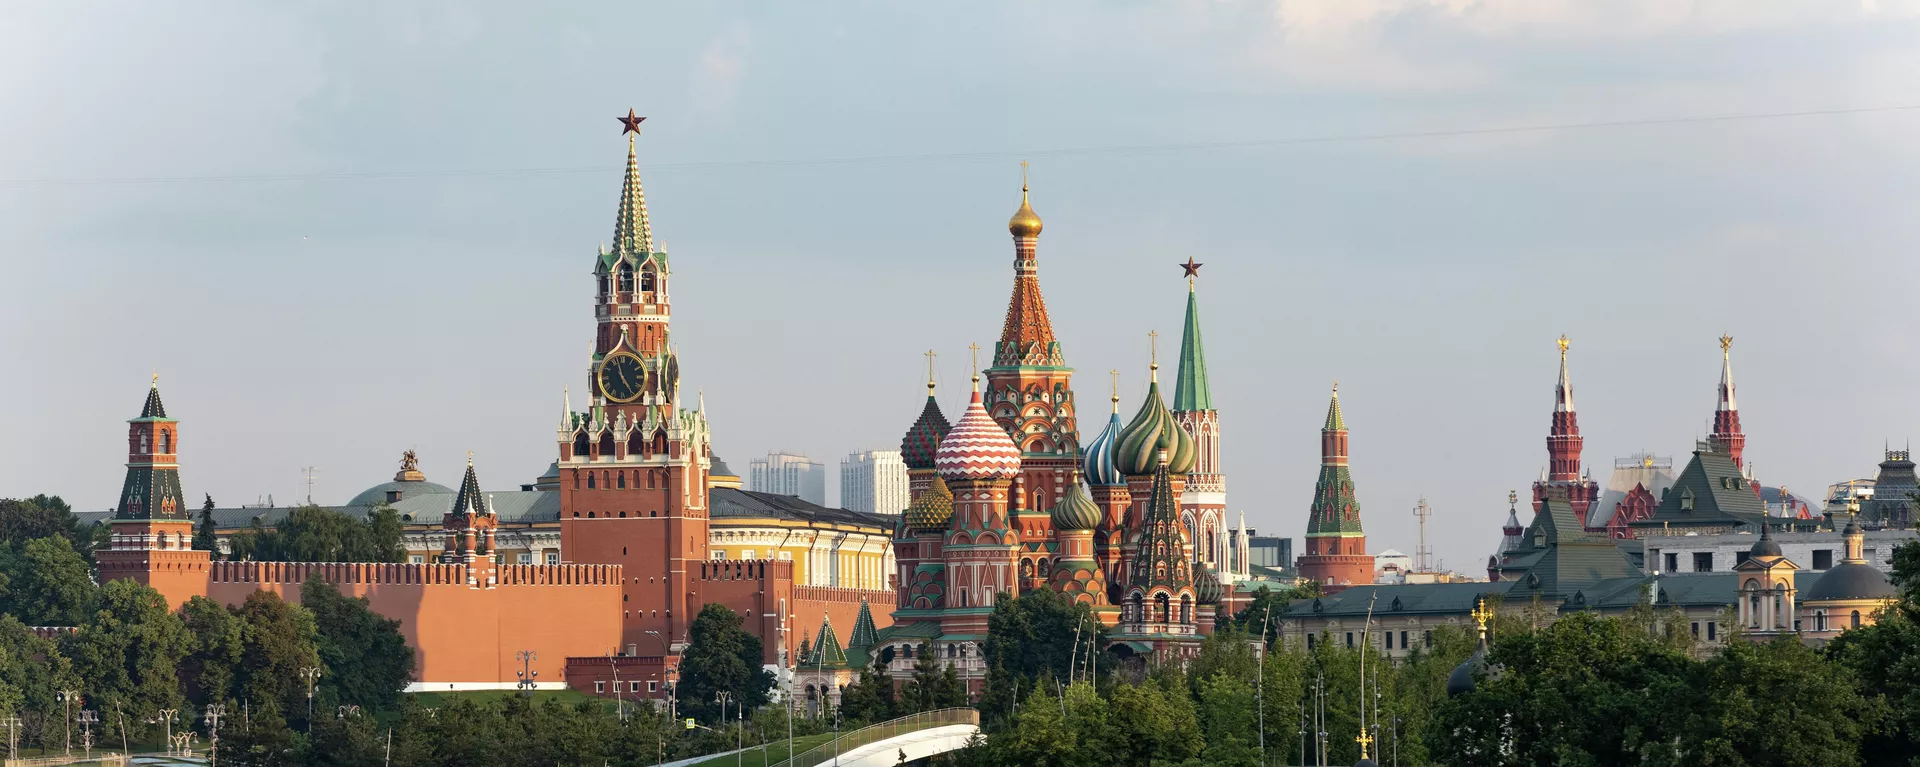 Widok na Kreml z wieżą Spasskaya i katedrą św. Bazyla w Moskwie, Rosja. - Sputnik International, 1920, 17.08.2023